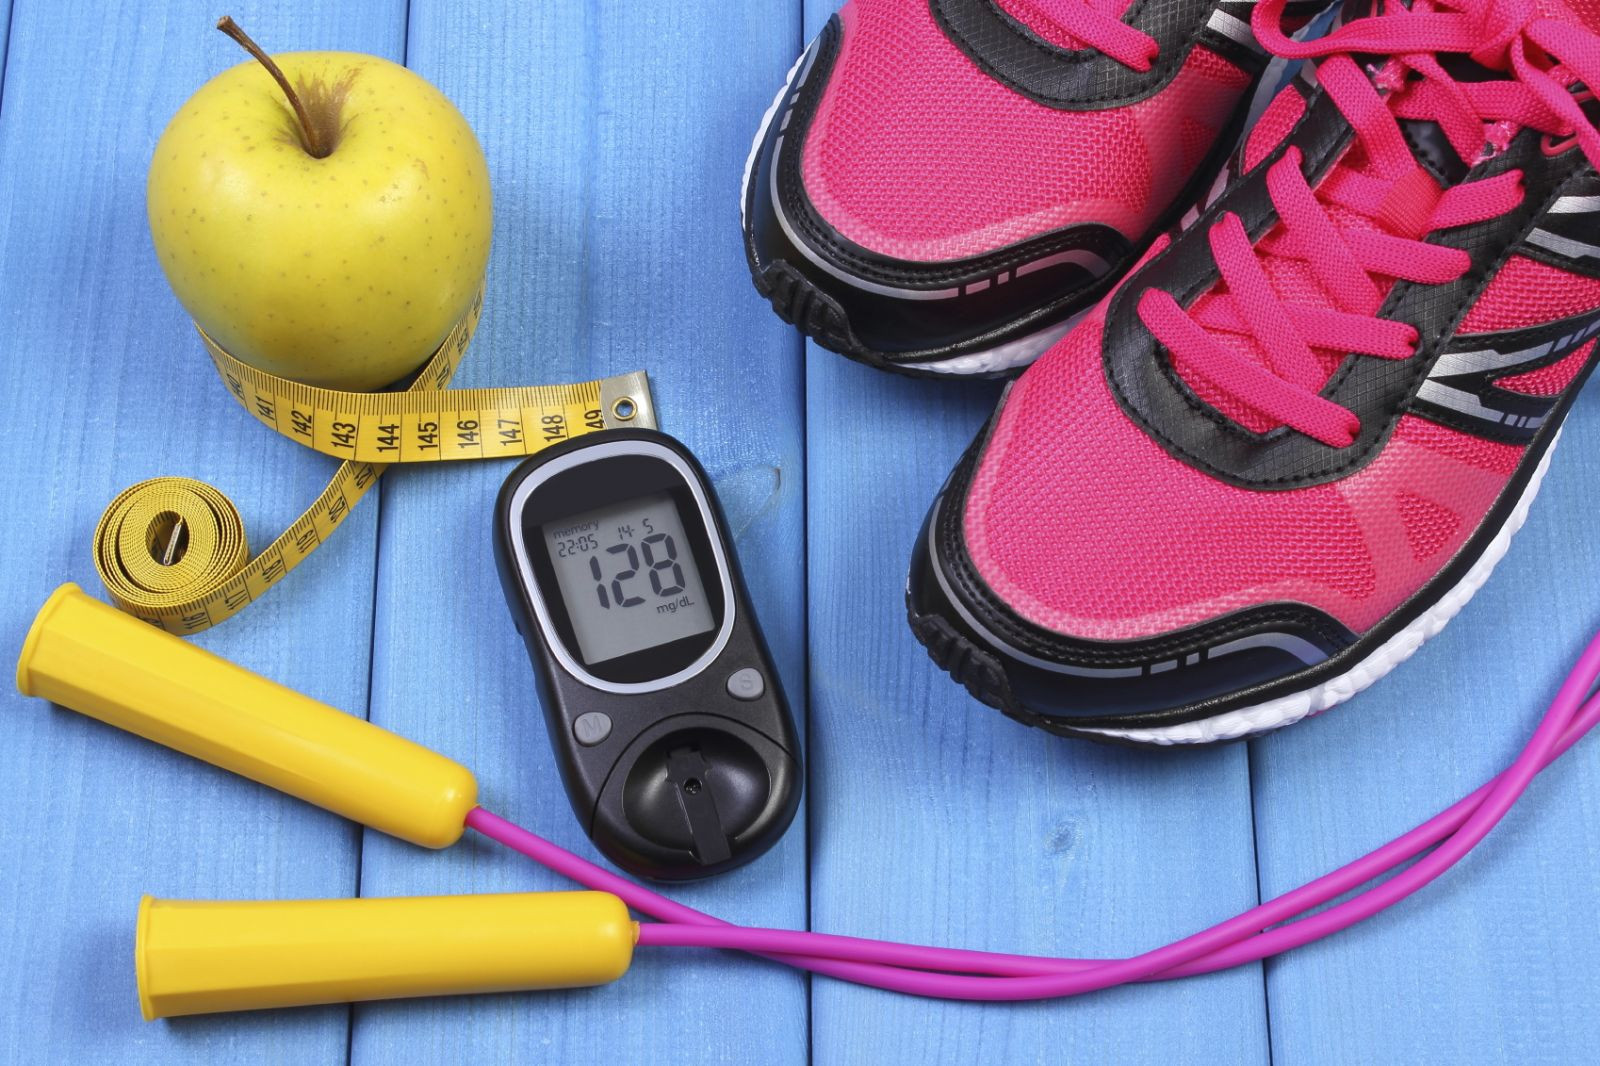 10 lời khuyên trong ăn uống với bệnh tiểu đường